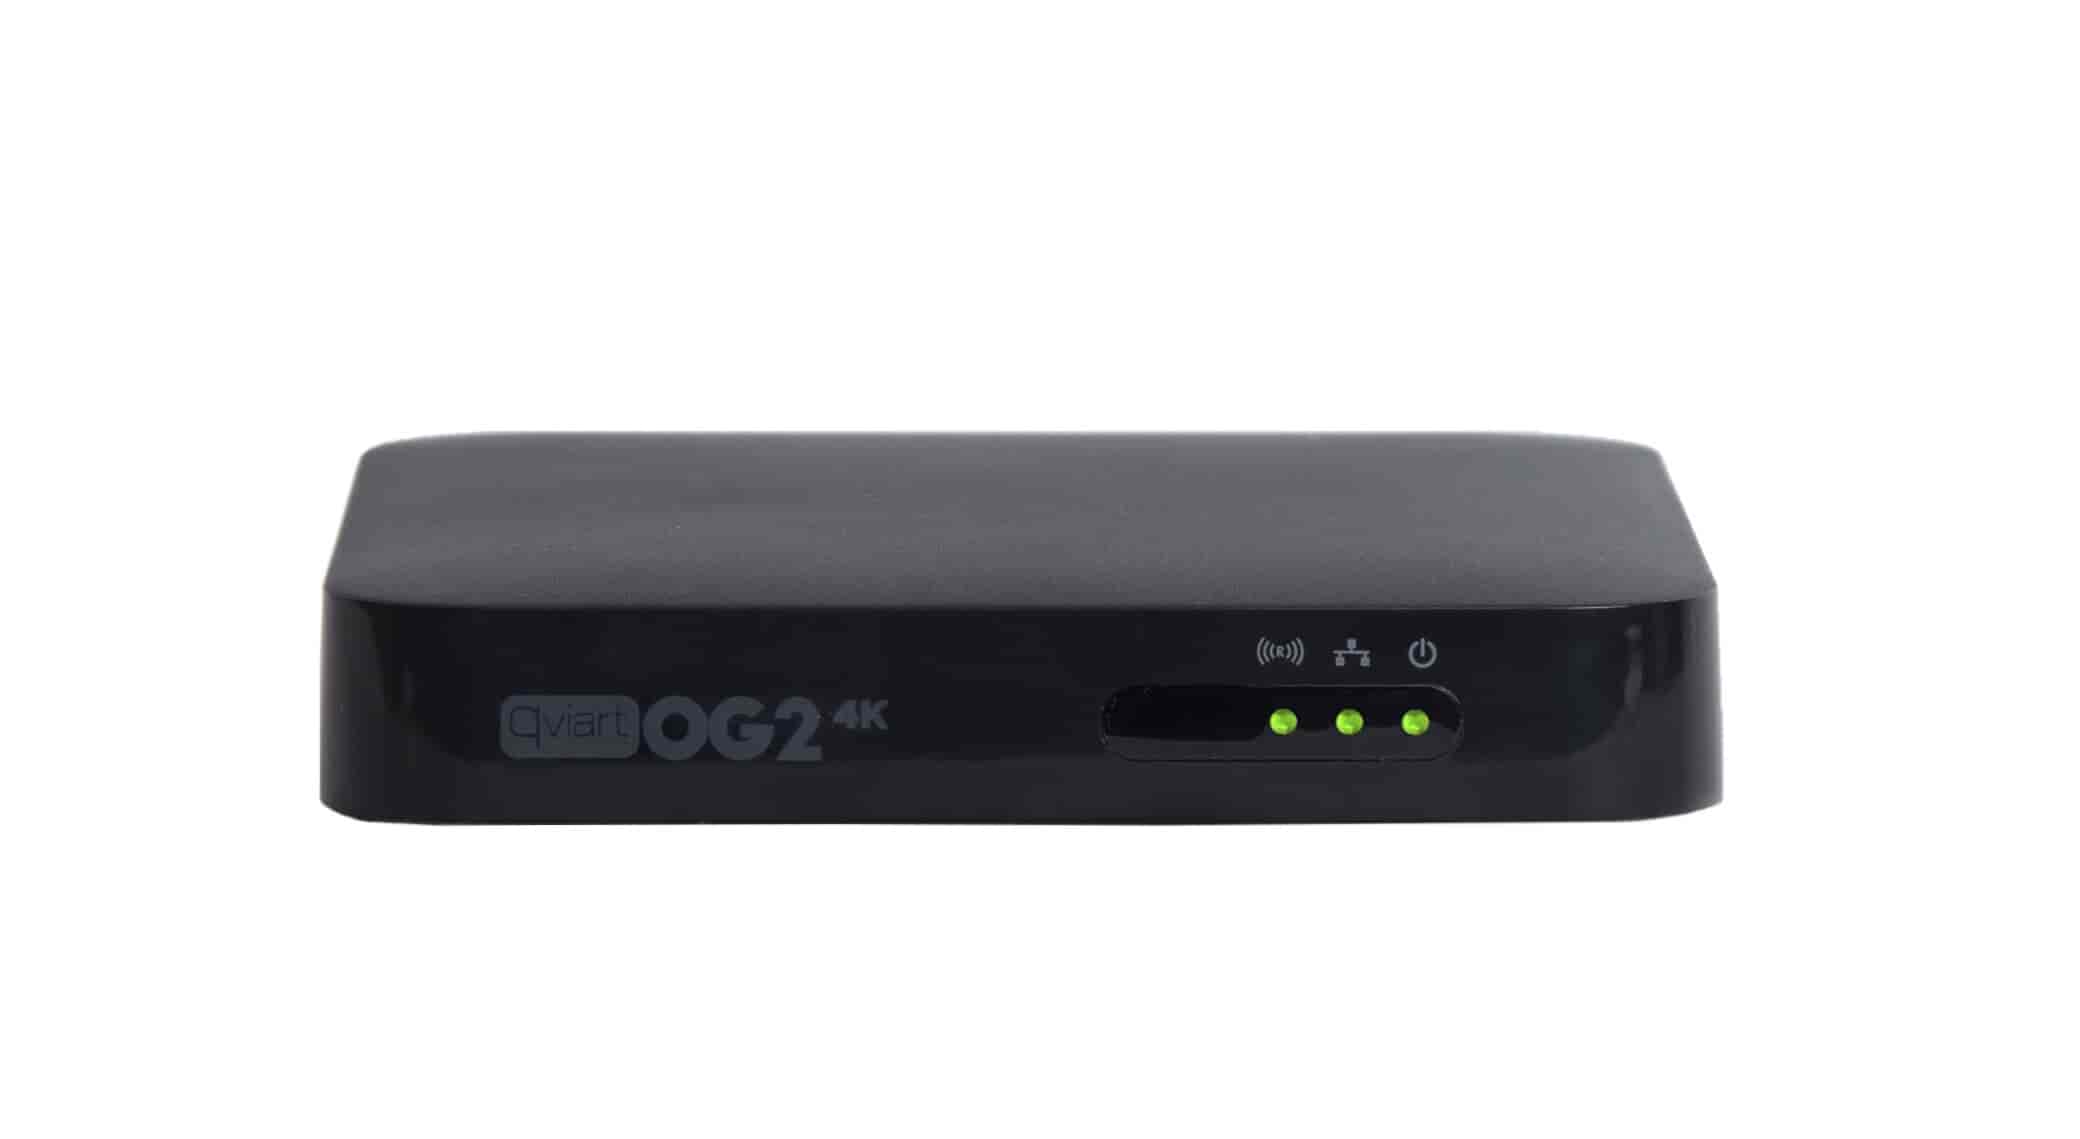 Qviart IPTV player OG24K - OG24K IPTV Boks multimediaplayer Qviart 4K UHD 2160P H.265